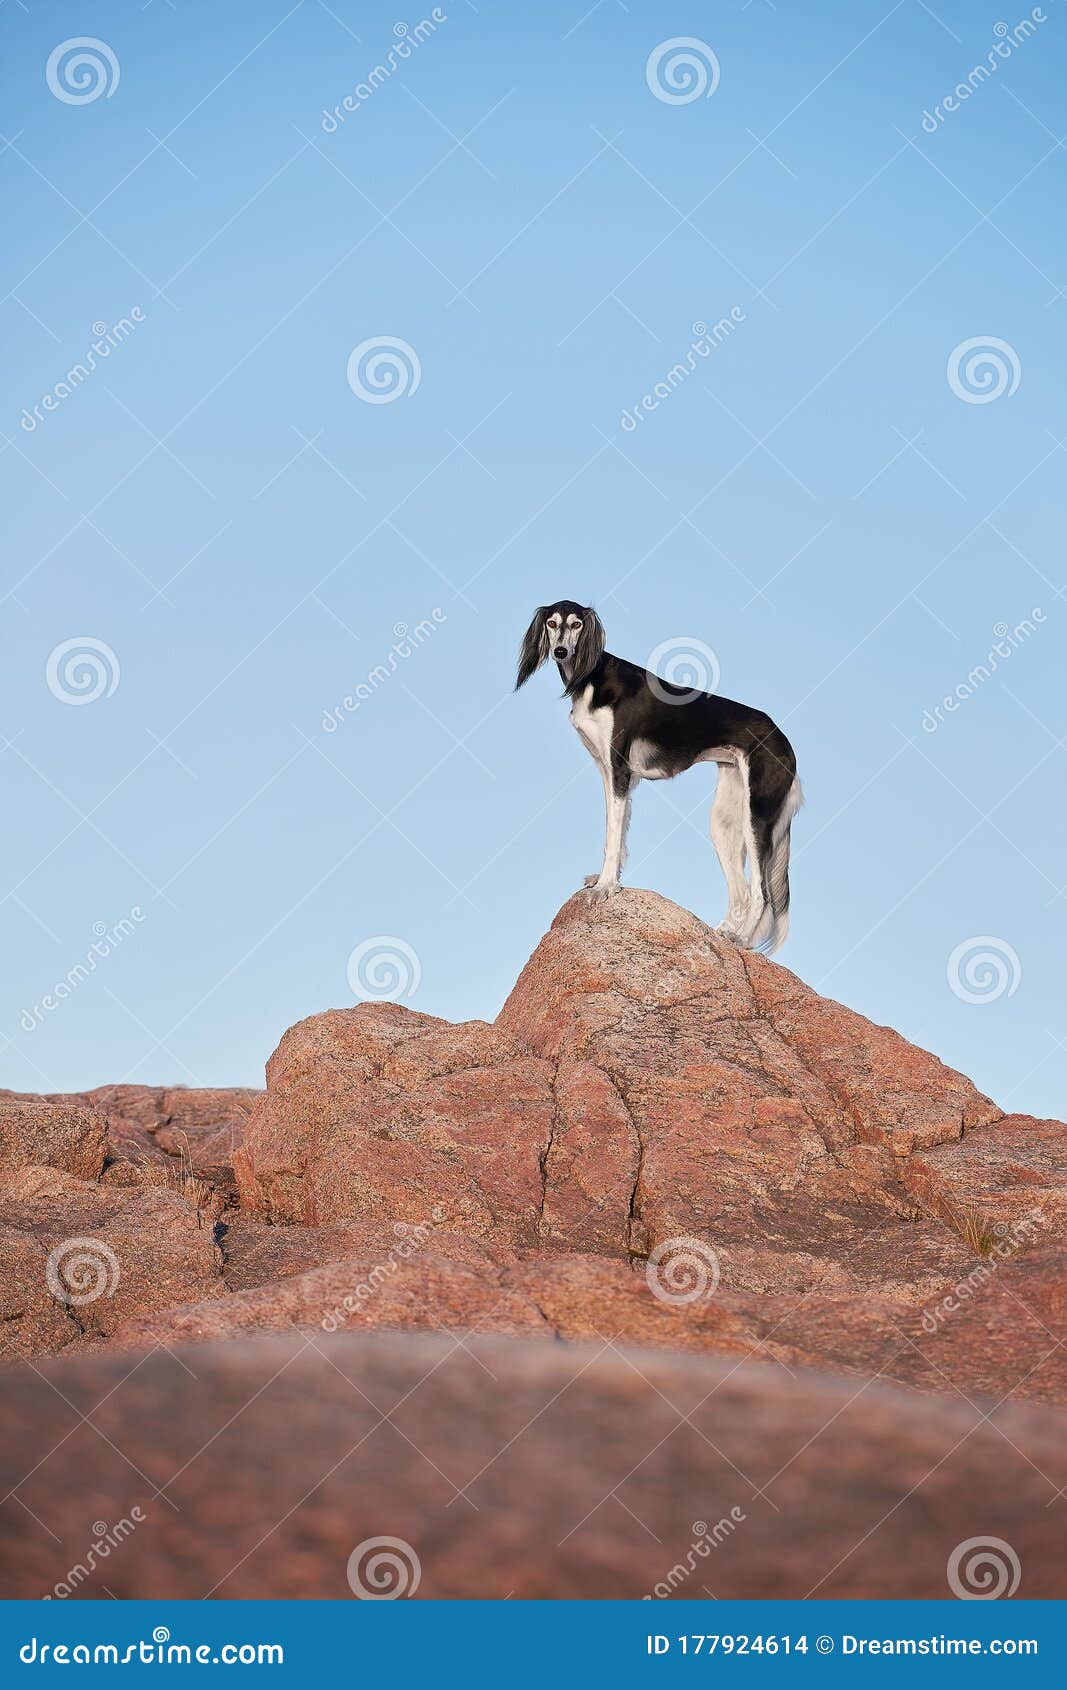 saluki black dog breed at naturales at the rock